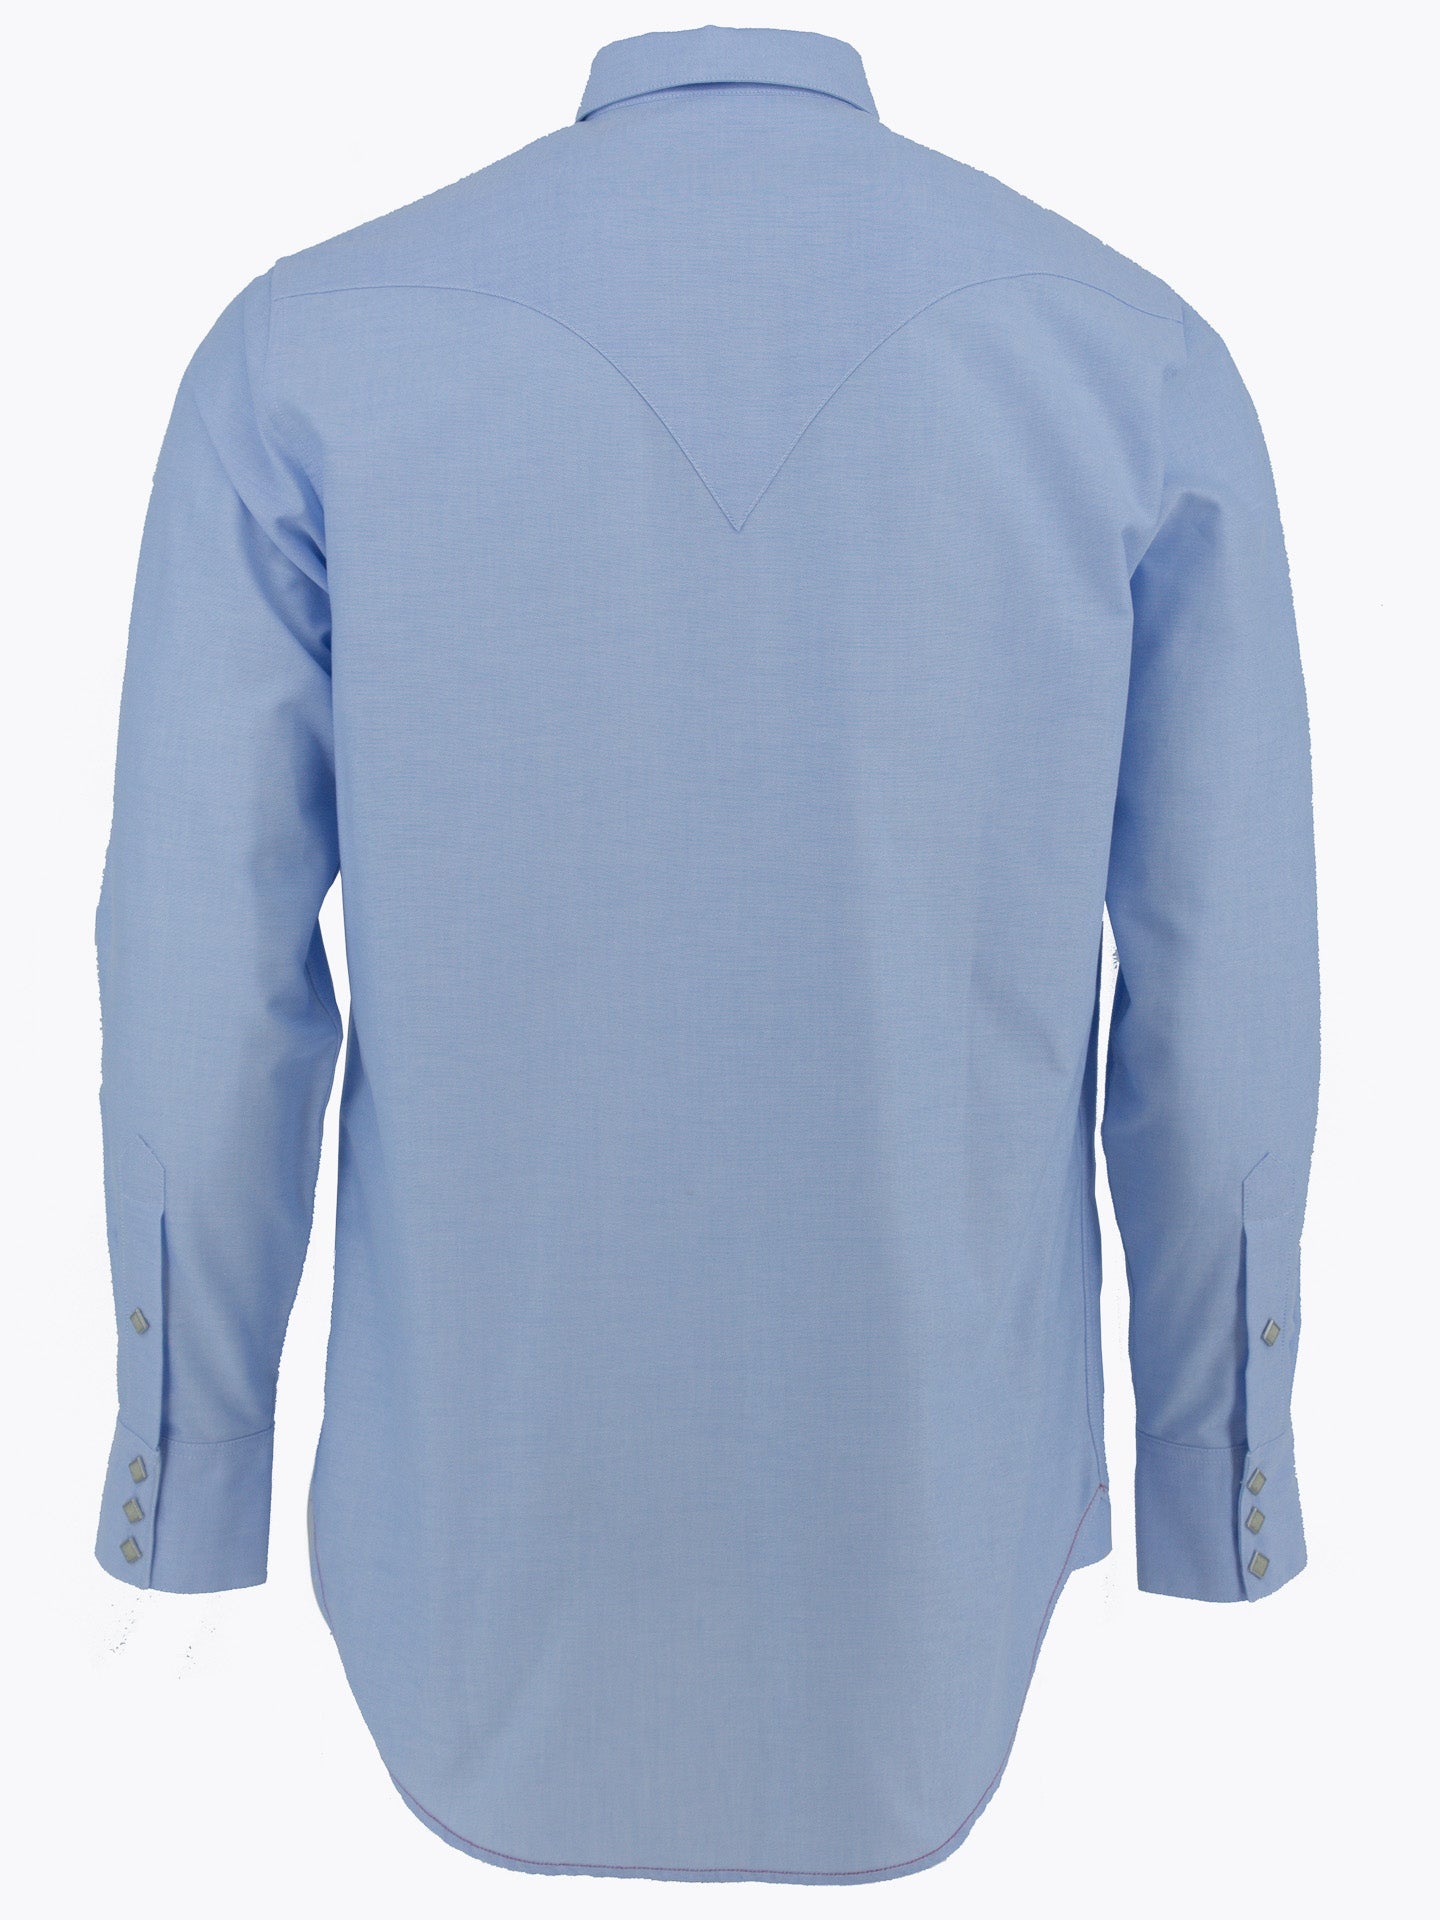 Sawtooth Western Shirt, Light Blue-Skjorter-Sneum-Motorious Copenhagen